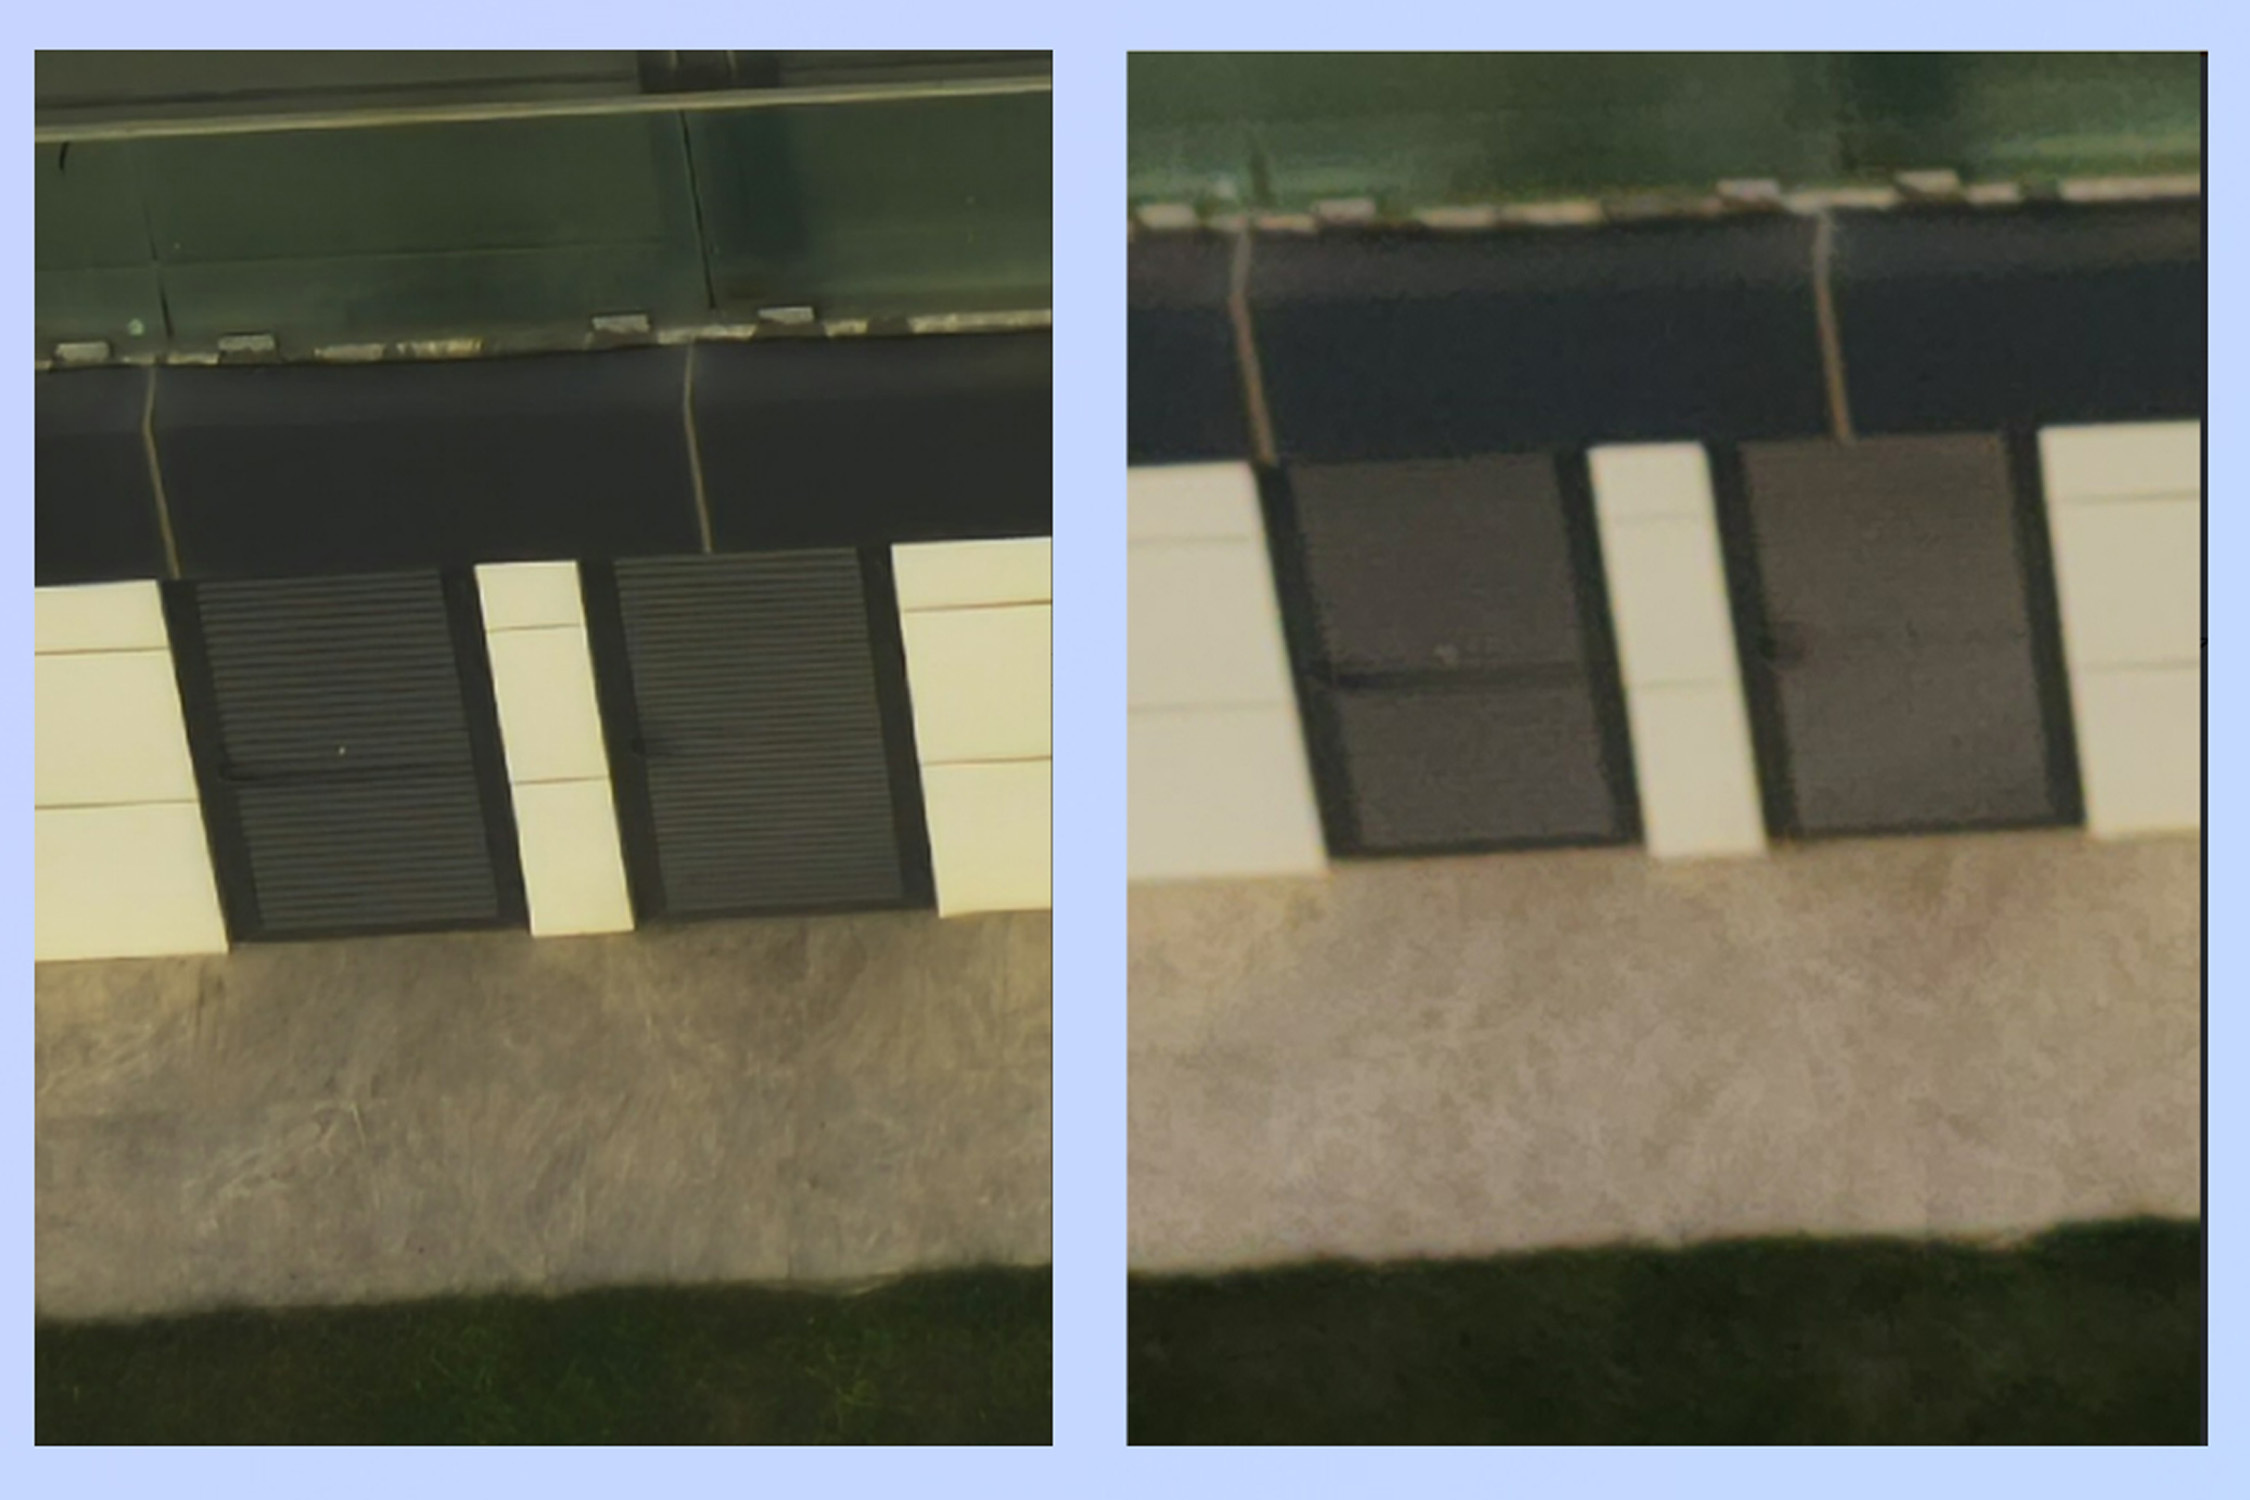 عکس 200 مگاپیکسلی در سمت چپ و تصویر 108 مگاپیکسلی در سمت راست، هر دو با بزرگنمایی 16 برابر.